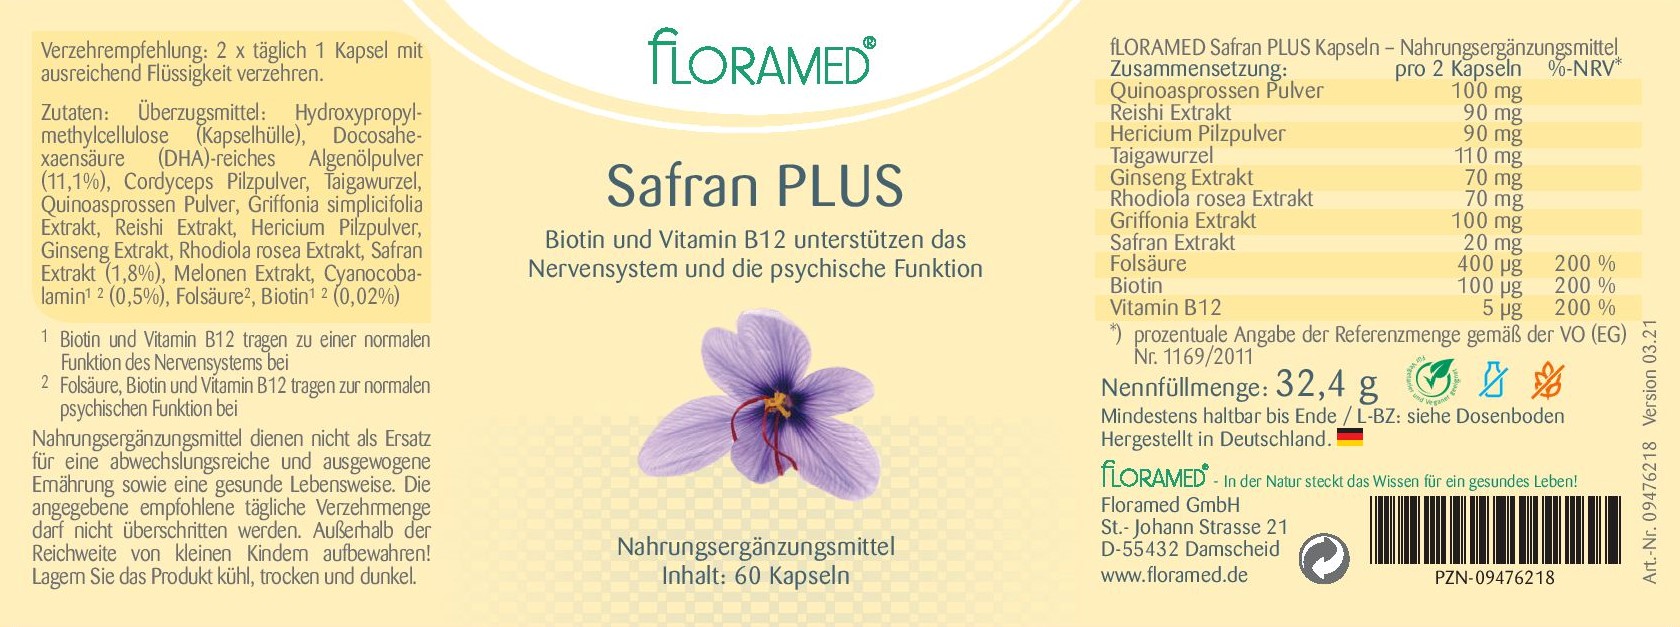 Floramed Safran Plus